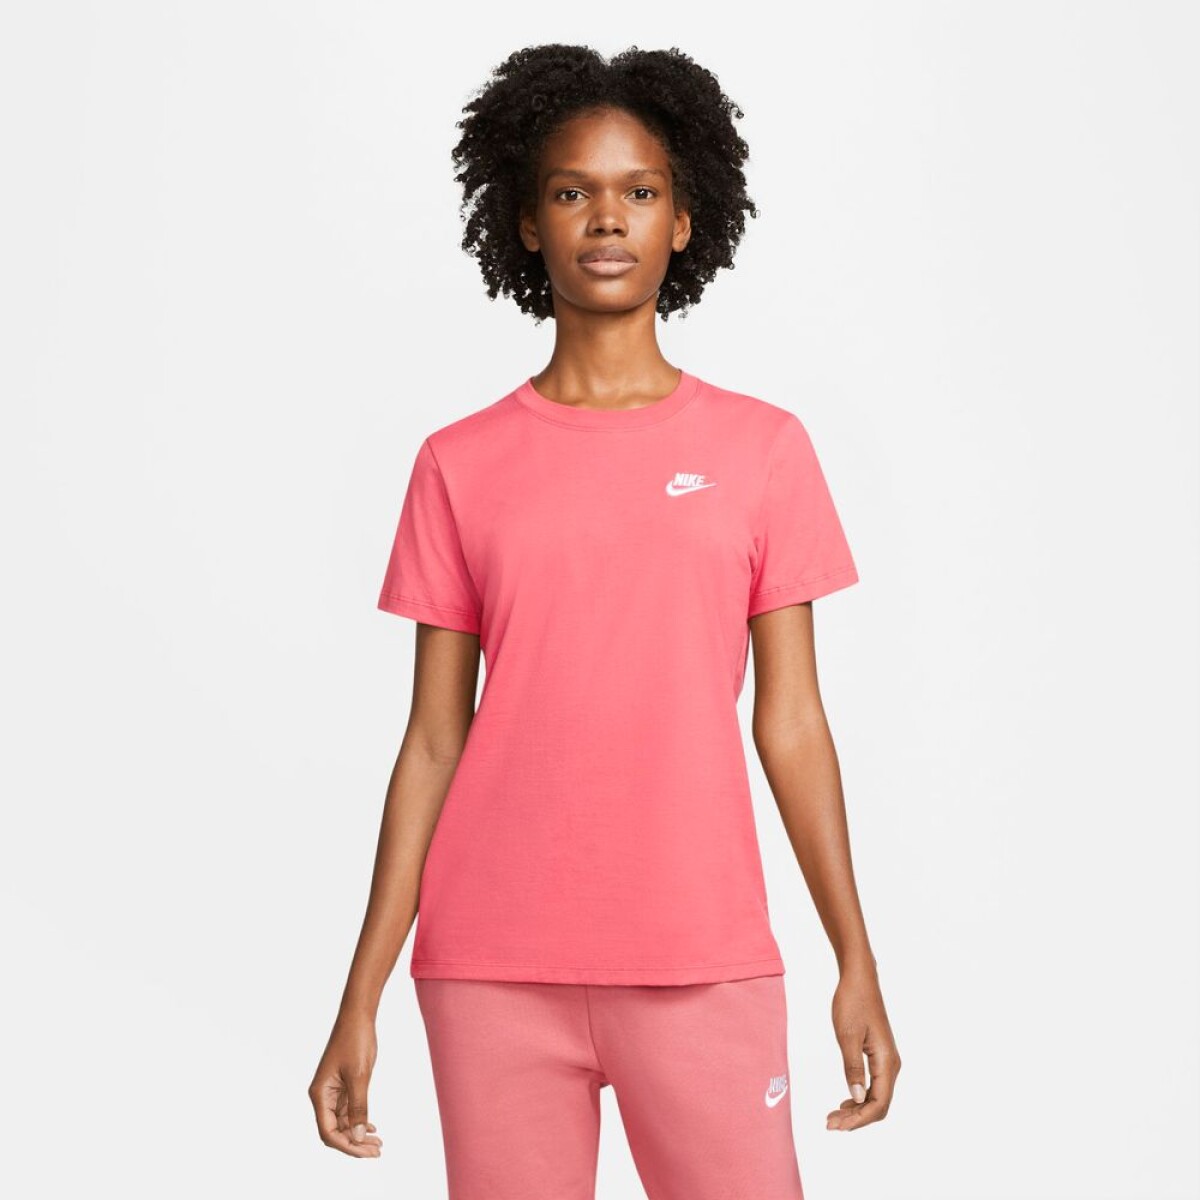 Remera Nike Moda Dama Club Tee - S/C 